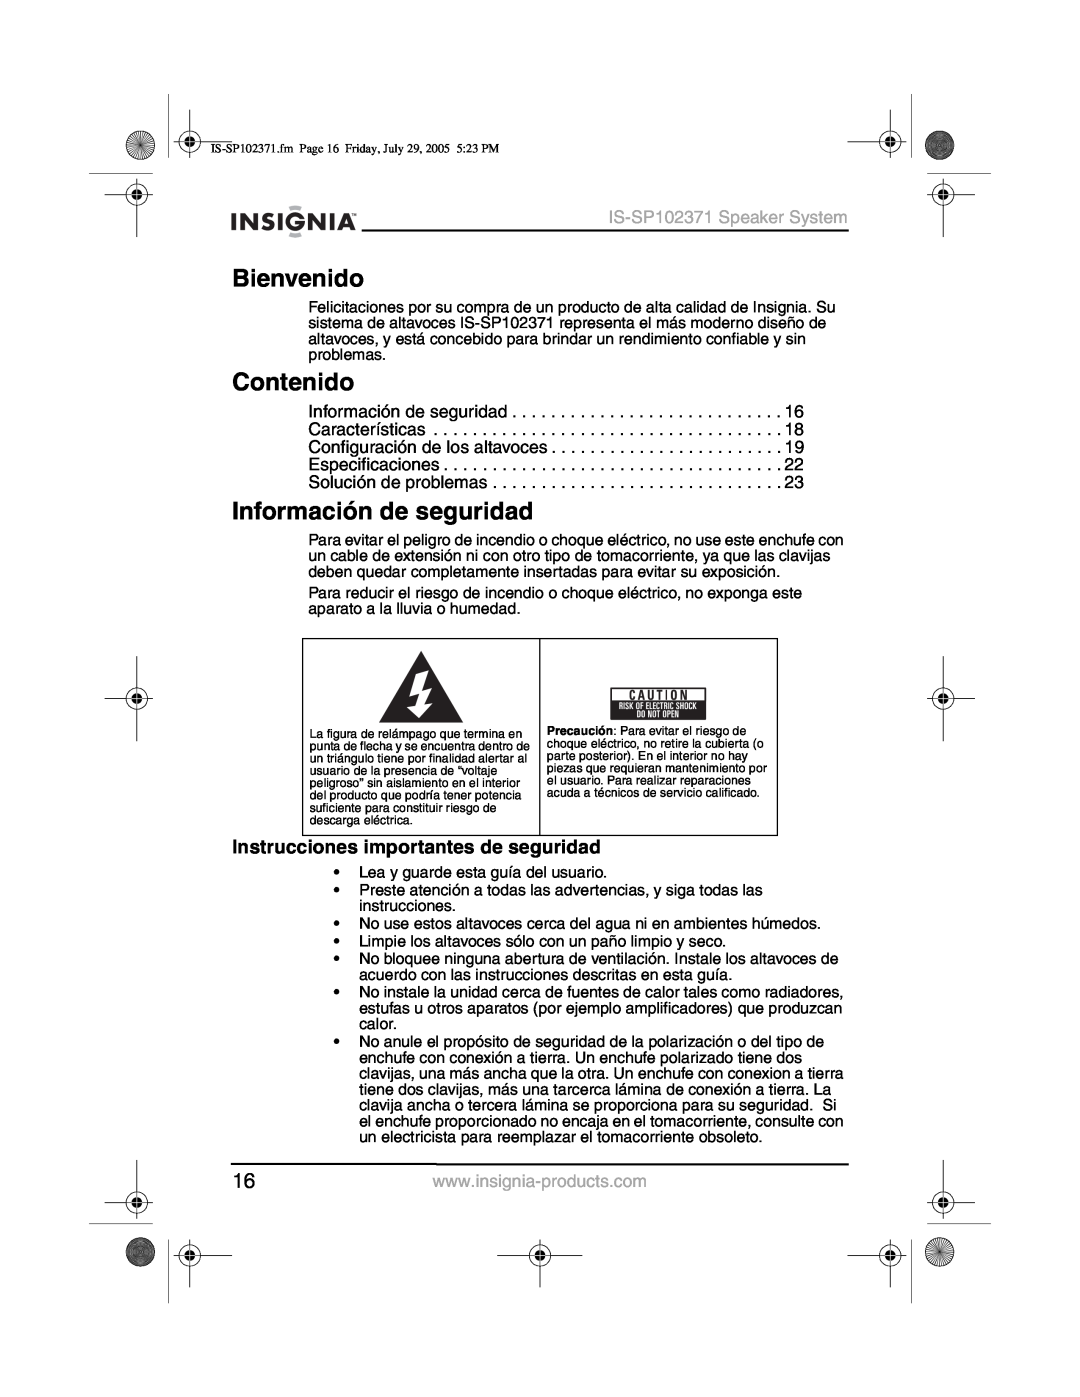 Insignia IS-SP102371 manual Bienvenido, Contenido, Información de seguridad, Instrucciones importantes de seguridad 